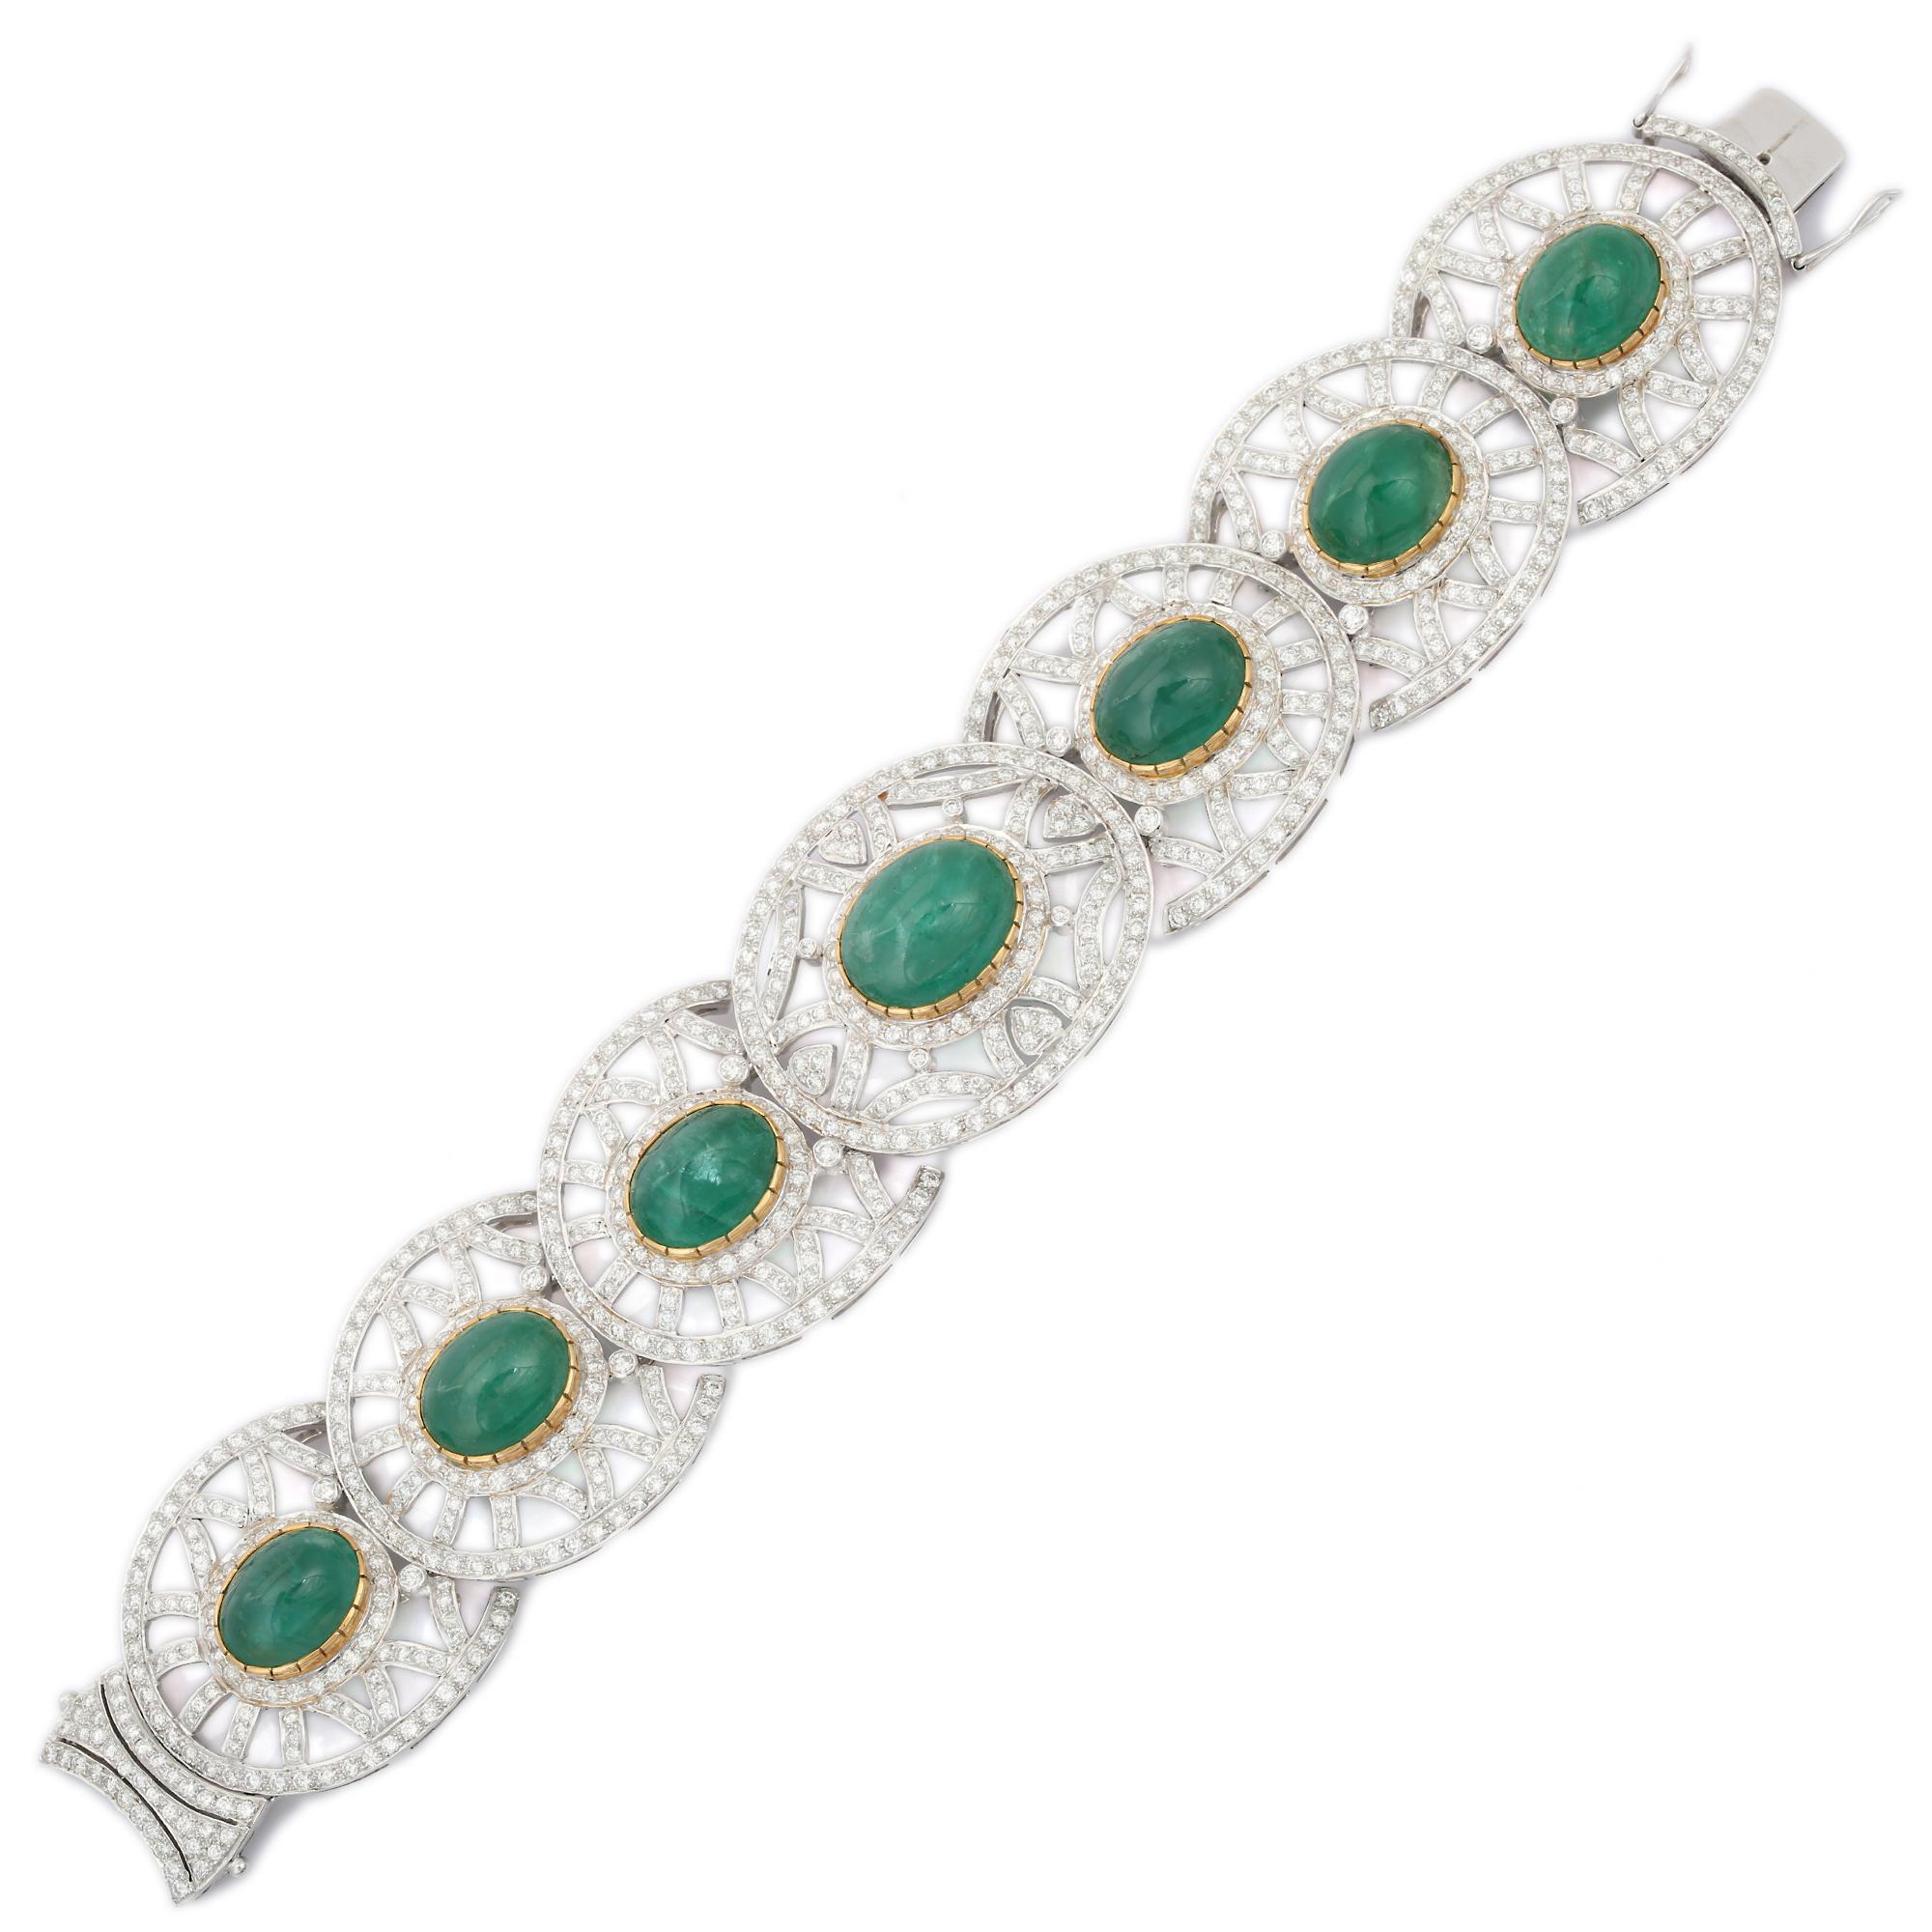 Ce bracelet Emerald Diamond Fine Jewelry en or 18 carats présente 7 émeraudes cabochons étincelantes, pesant 53 carats, et des diamants.  diamants pesant 12,5 carats. Il mesure 7.5 pouces de long. 
L'émeraude renforce les capacités intellectuelles